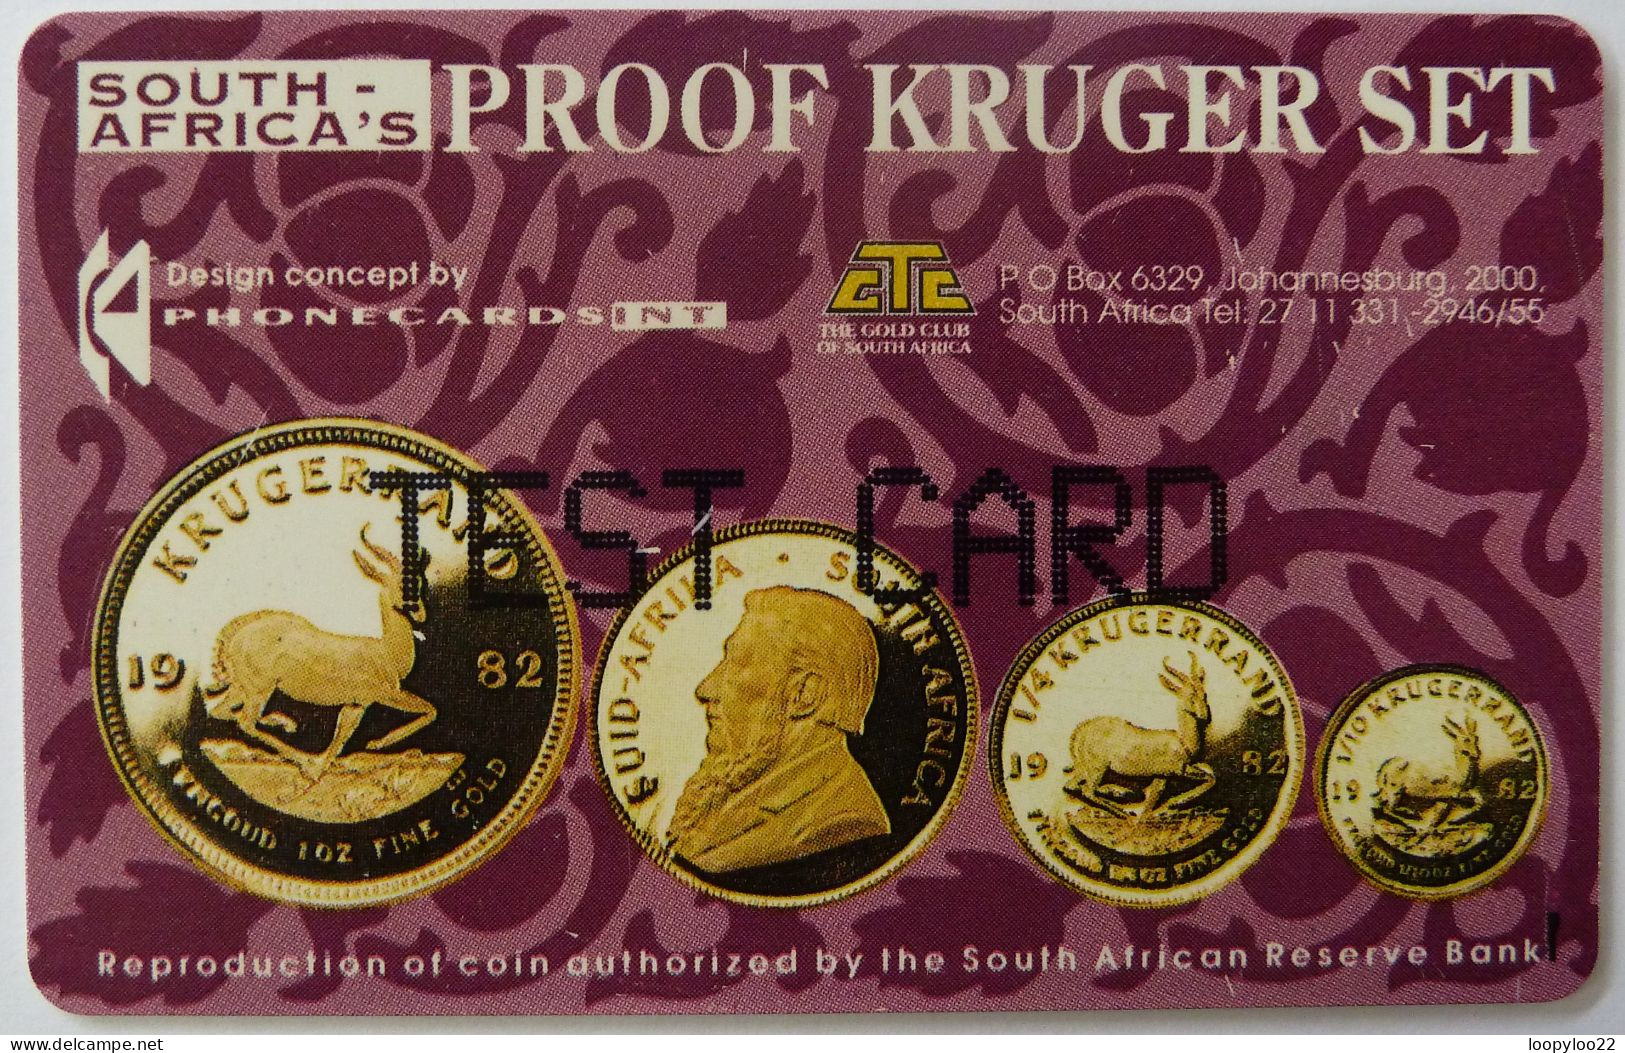 SOUTH AFRICA - TEST CARD - Proof Kruger Set - R20 - With 080 - RRR - Sudafrica